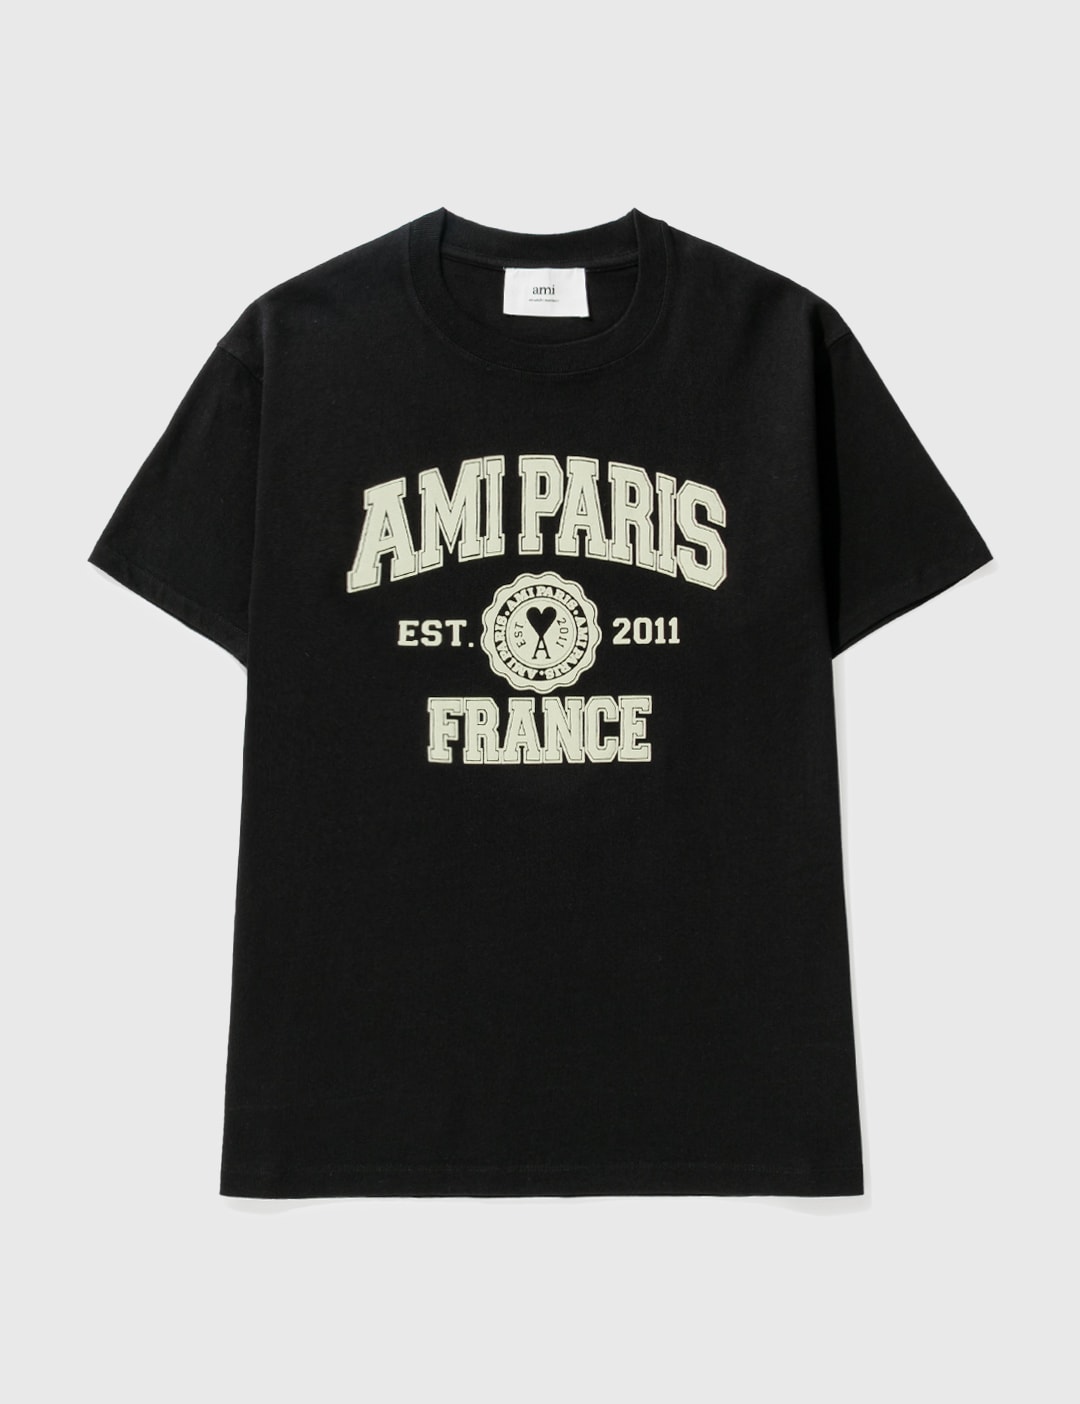 AMI PARIS FRANCE T-SHIRT Placeholder Image